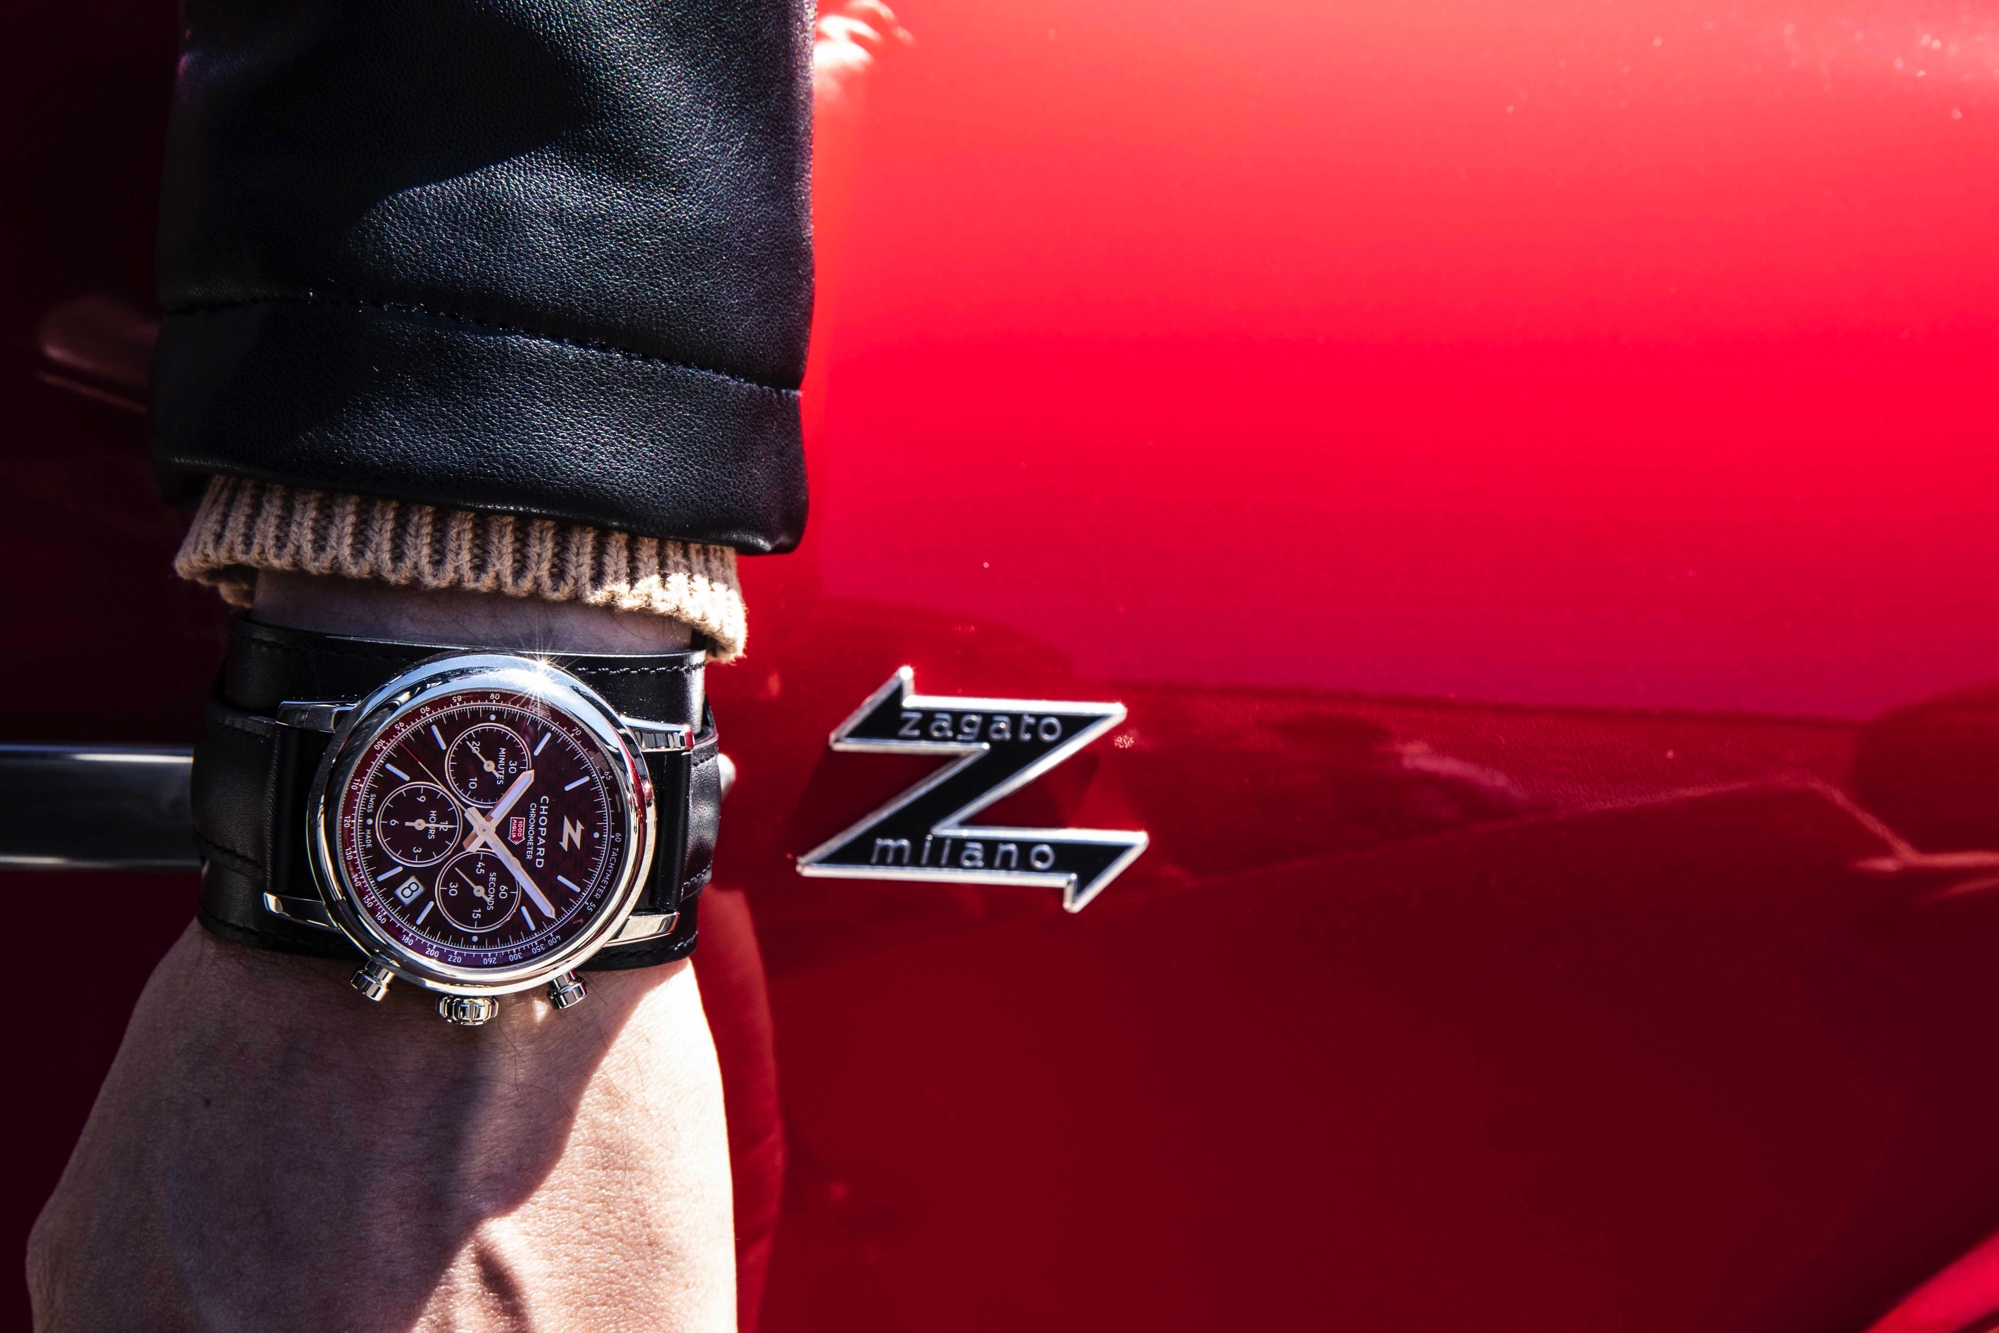 Mille Miglia Classic Chronograph-Zagato 100th Anniversary Edition cover wristshot